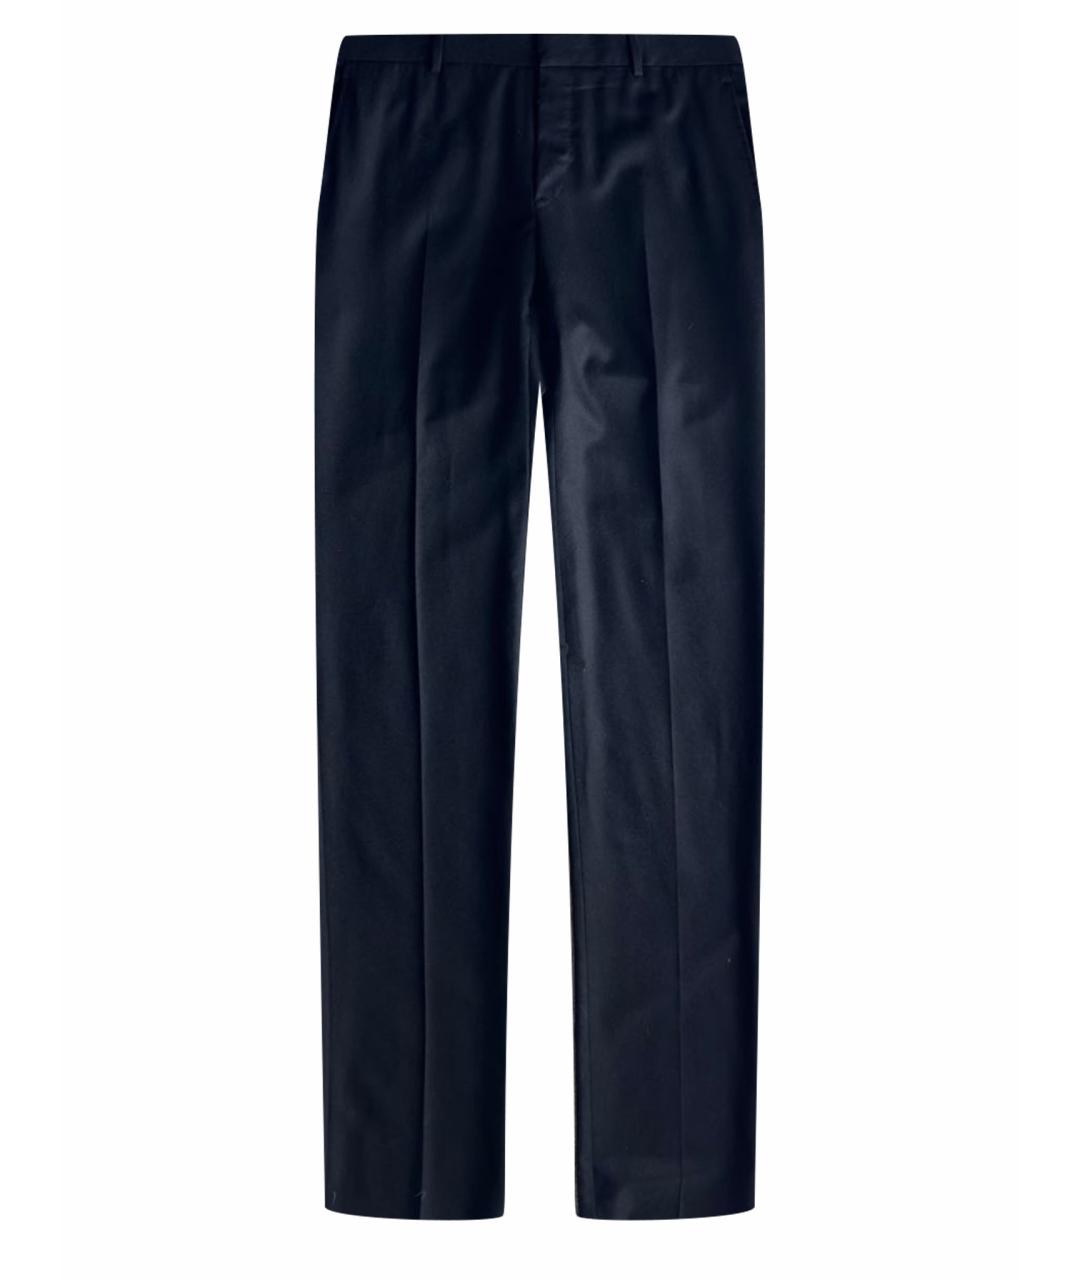 EMANUELA CARUSO Черные шерстяные классические брюки, фото 1